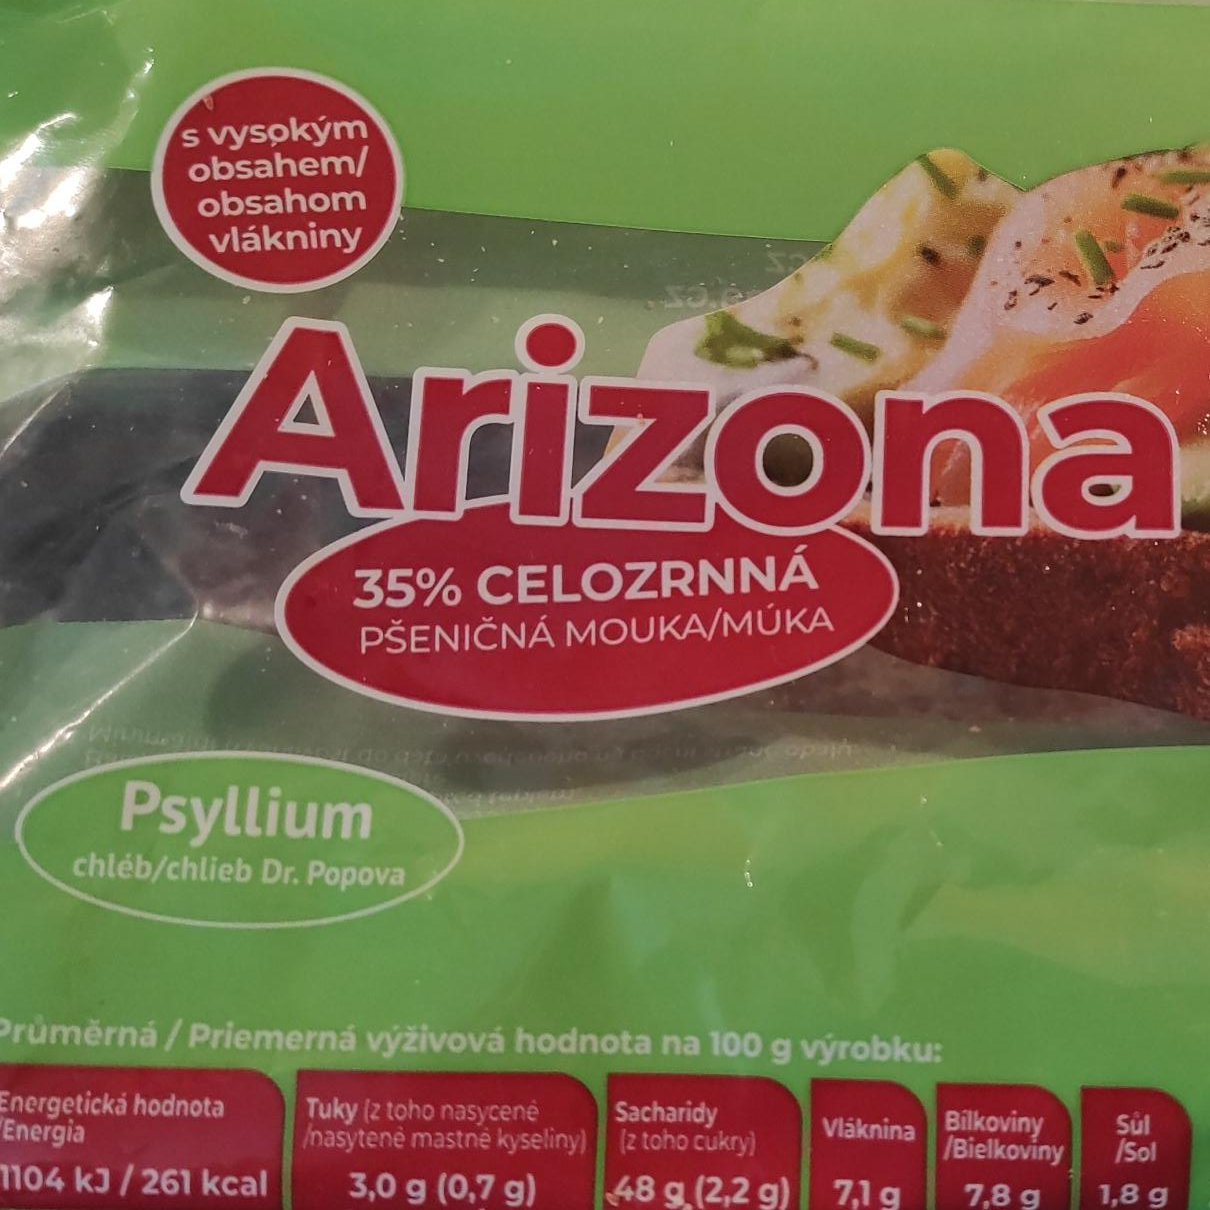 Fotografie - Psyllium chléb Arizona 35% celozrnná pšeničná mouka Dr.Popov